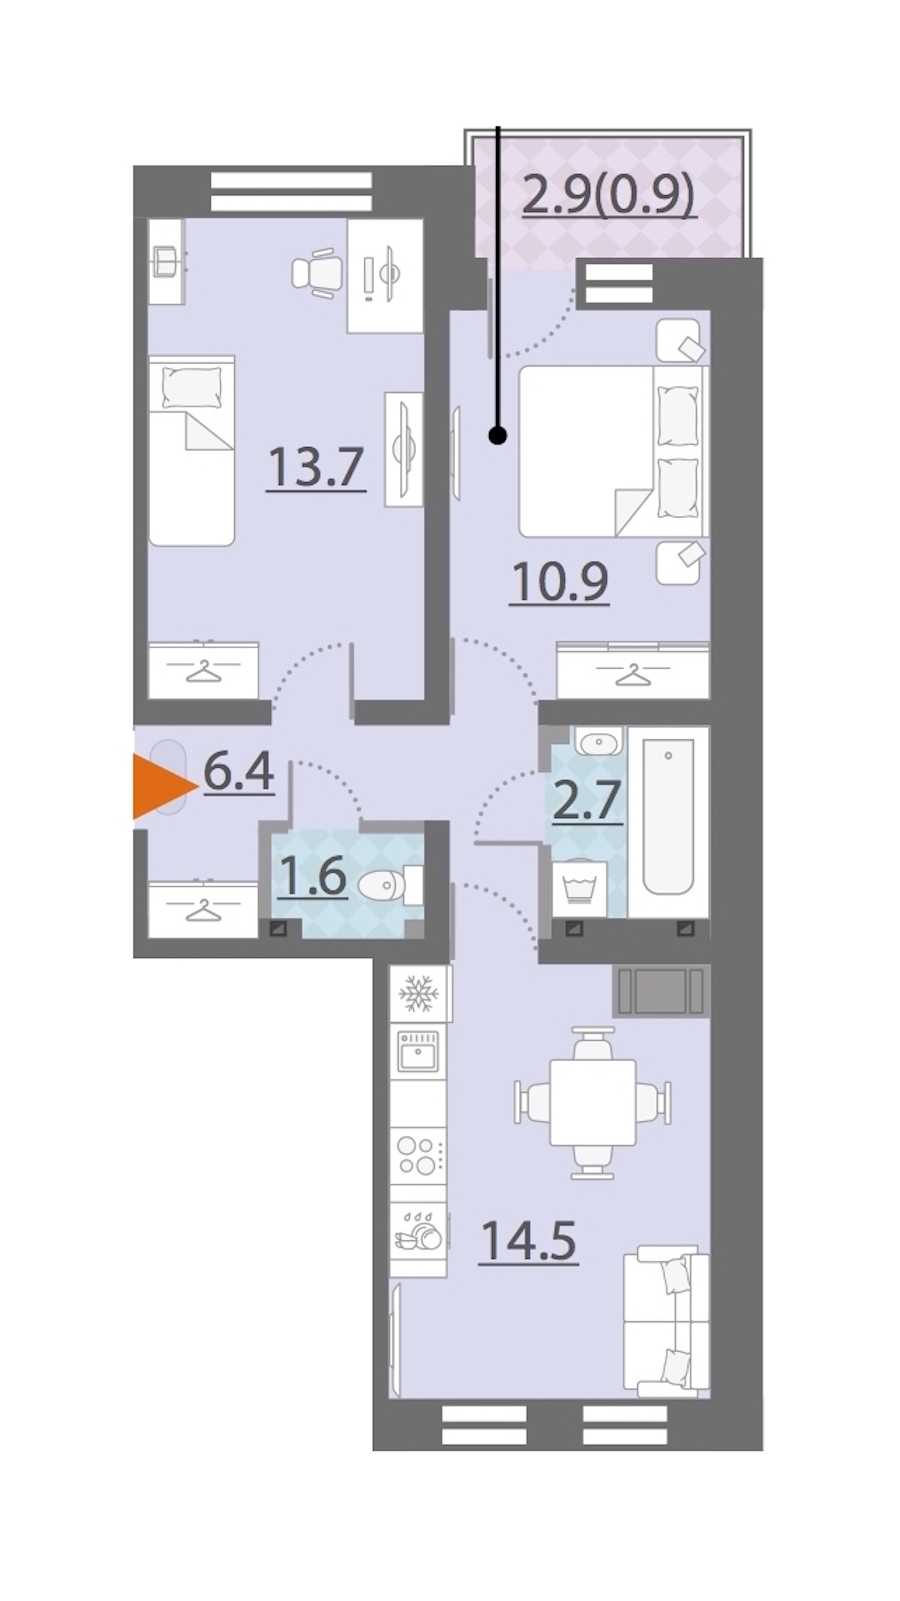 Двухкомнатная квартира в Группа ЛСР: площадь 50.7 м2 , этаж: 21 – купить в Санкт-Петербурге